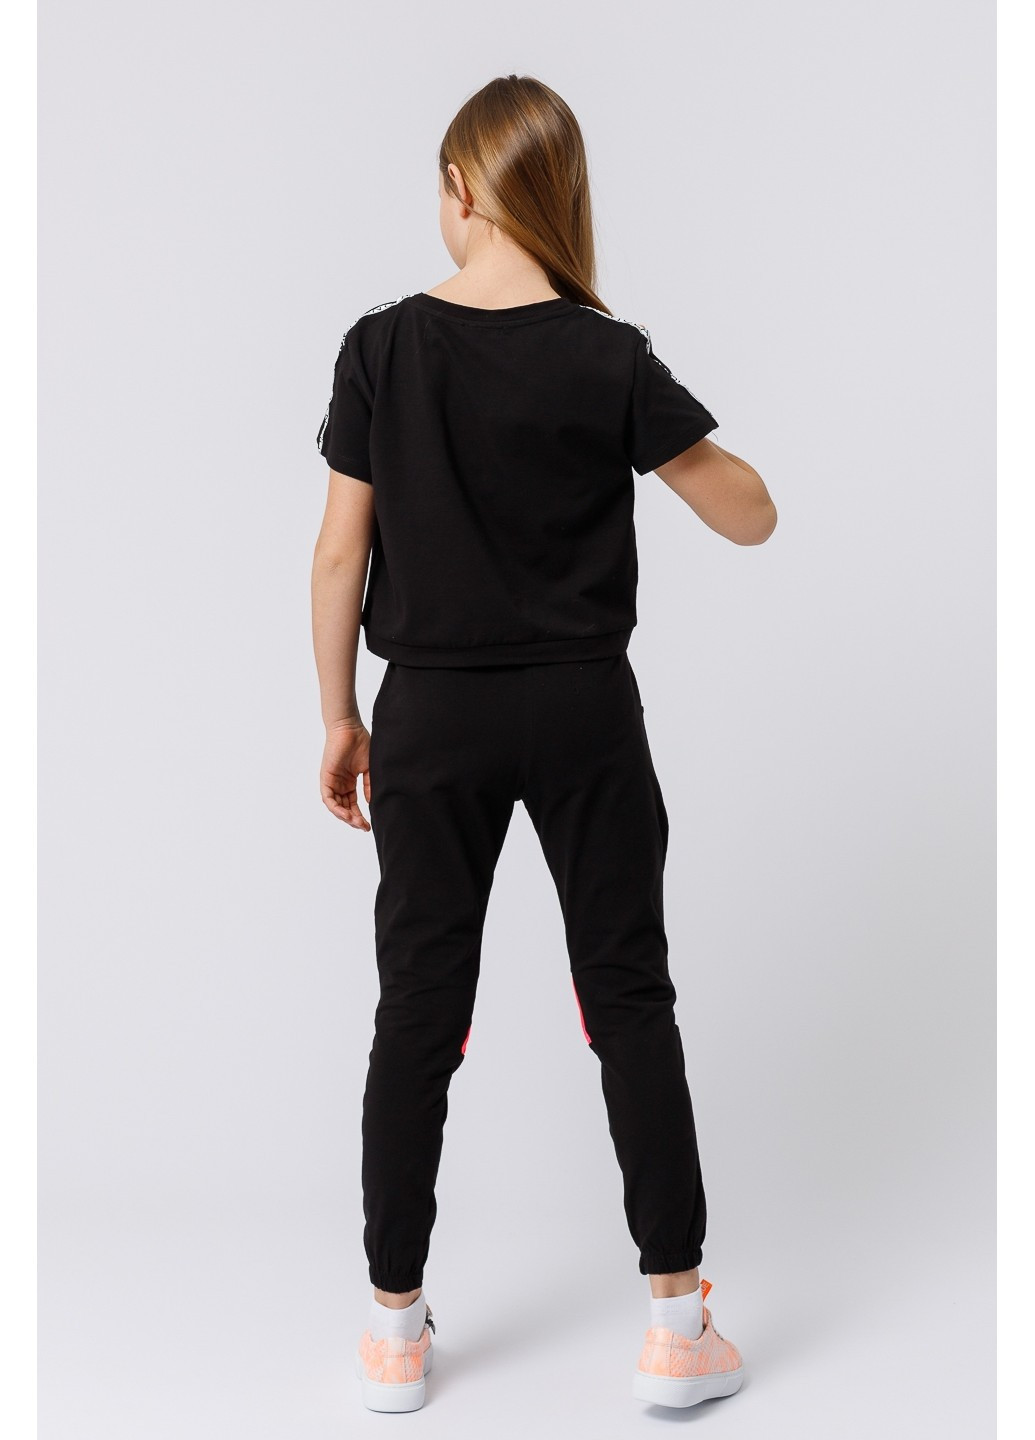 Чорний комплект для дівчинки штани і футболка Wanex